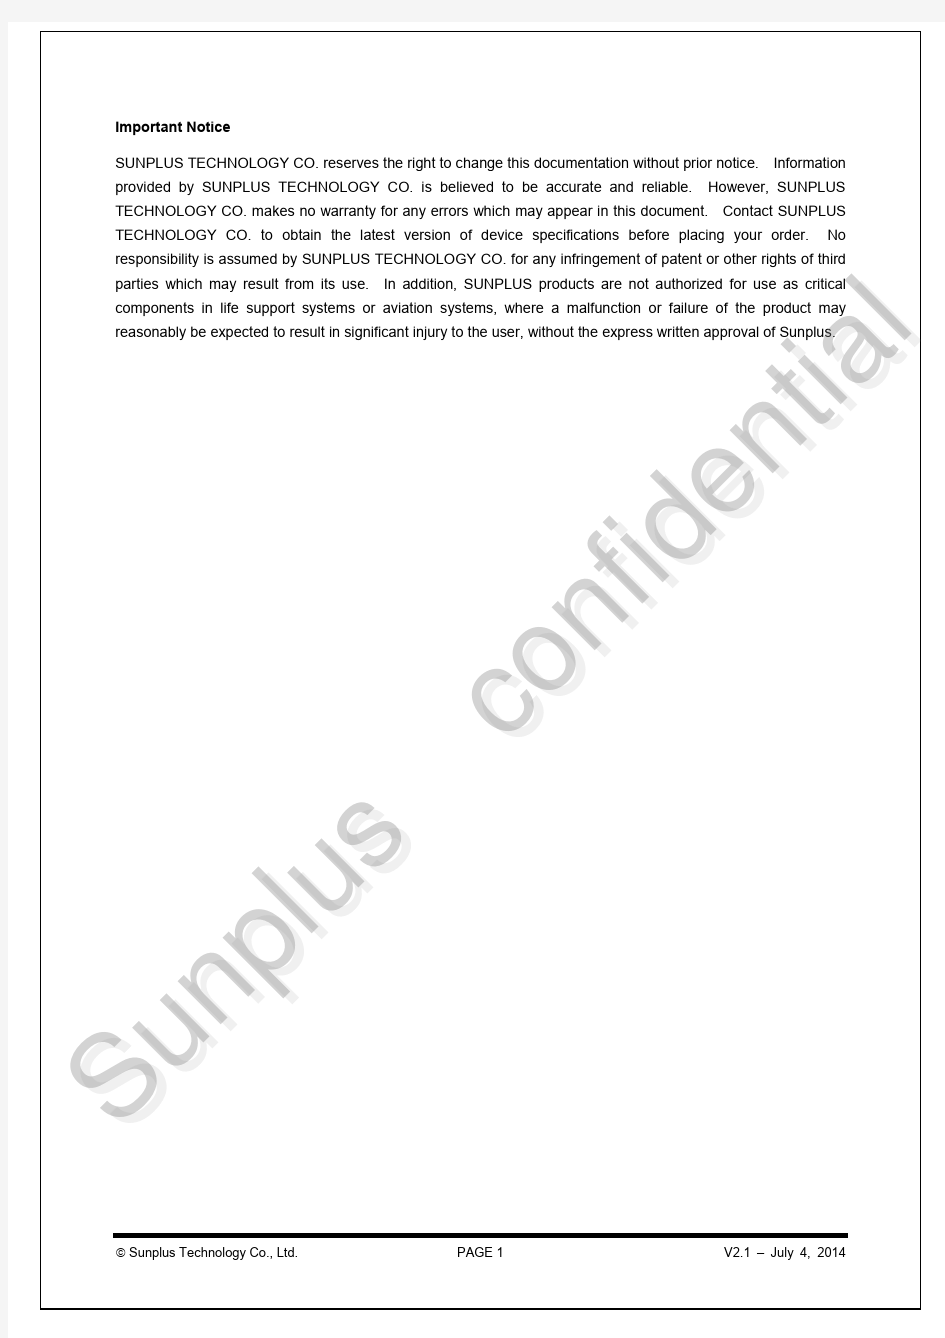 Sunplus SPHE8288T车机方案 Design Guide V2.1(marked)